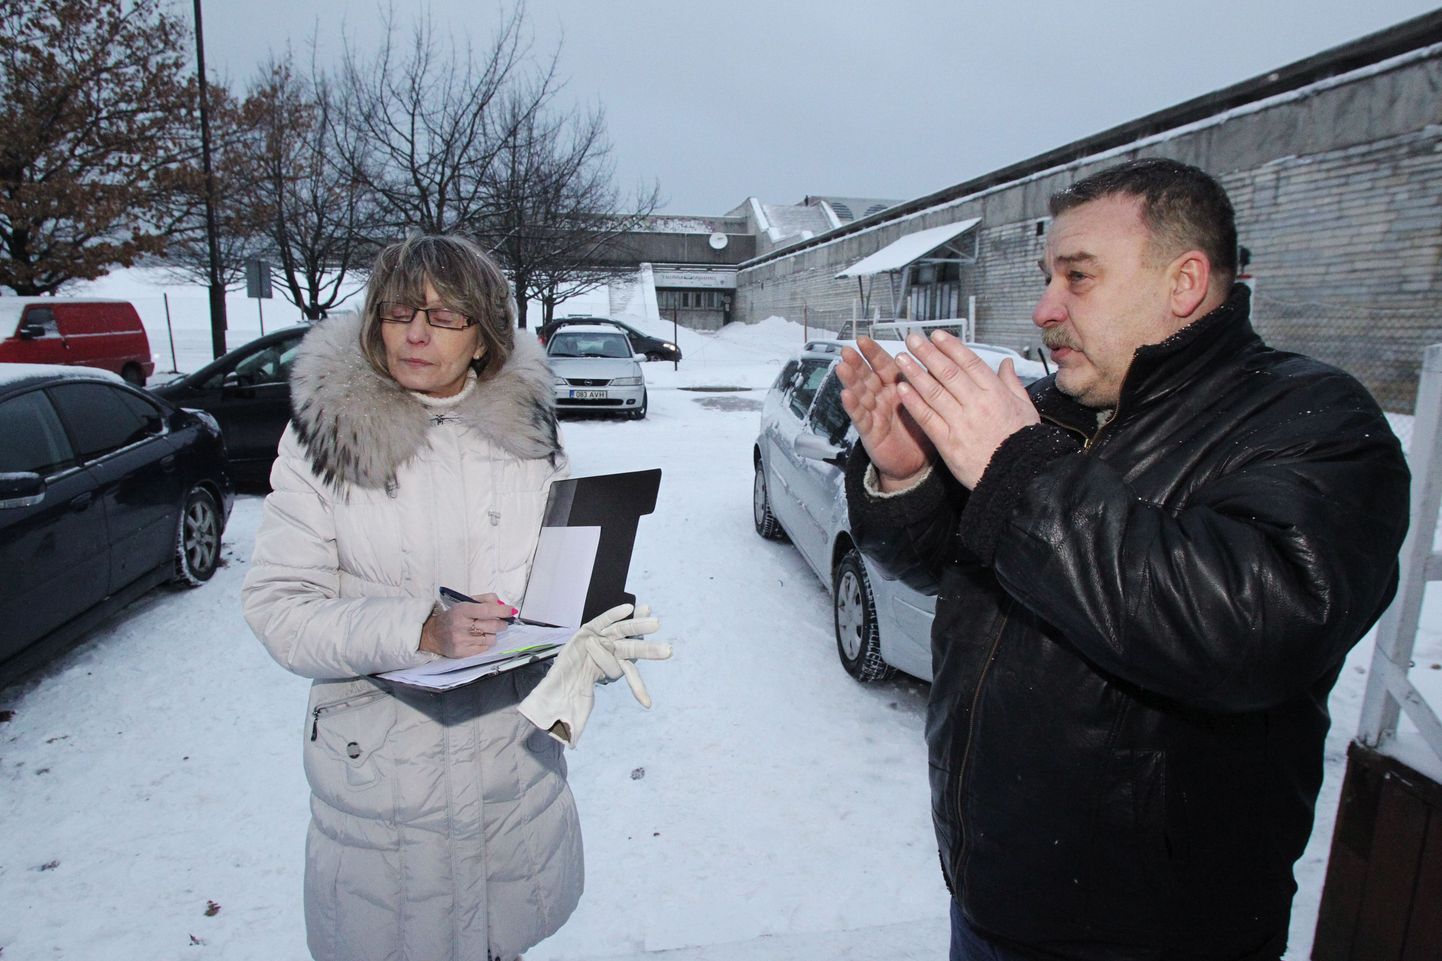 Põhja-Tallinna valitsuse ettevõtluse osakonna peaspetsialist Lille Jenk
ja OÜ Kõlakoda tehnikadirektor Sergei Izotov kirjutasid reedel alla paberitele, millega parkla ühelt firmalt teisele üle läheb.